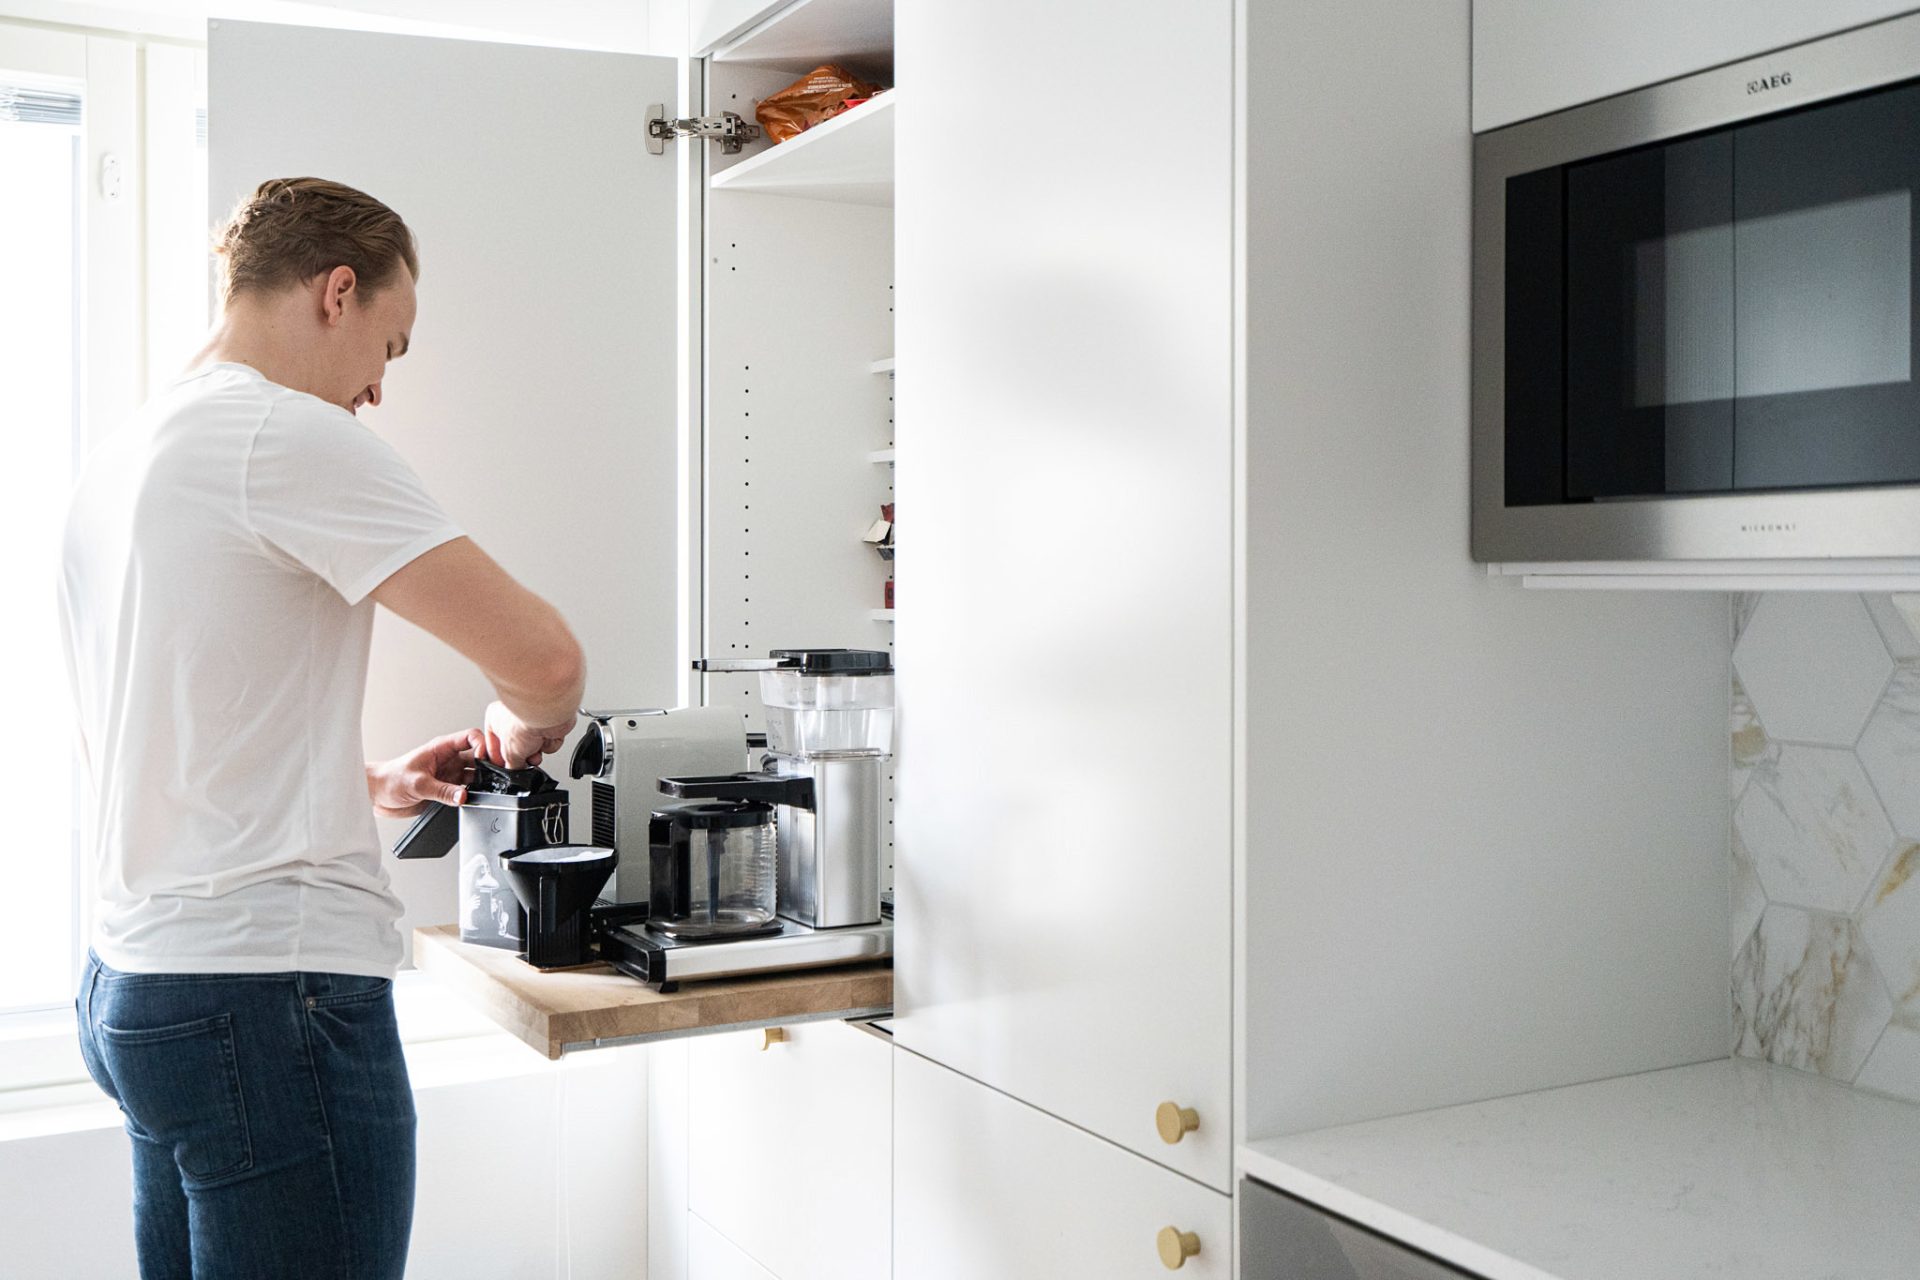 Aamiaiskaapin käytössä on huomioitava, että keittimien ja paahtimien käytössä ovi ei saa olla koskaan kiinni. Laitteista nouseva höyry ja lämpö vahingoittavat muutenkin helposti kalusteita, mikä on huomioitava esimerkiksi hyllyjen sijoittelussa. Unique Homen liukuva aamiaistaso tuo laitteet käytön ajaksi näppärästi ulos kaapista.